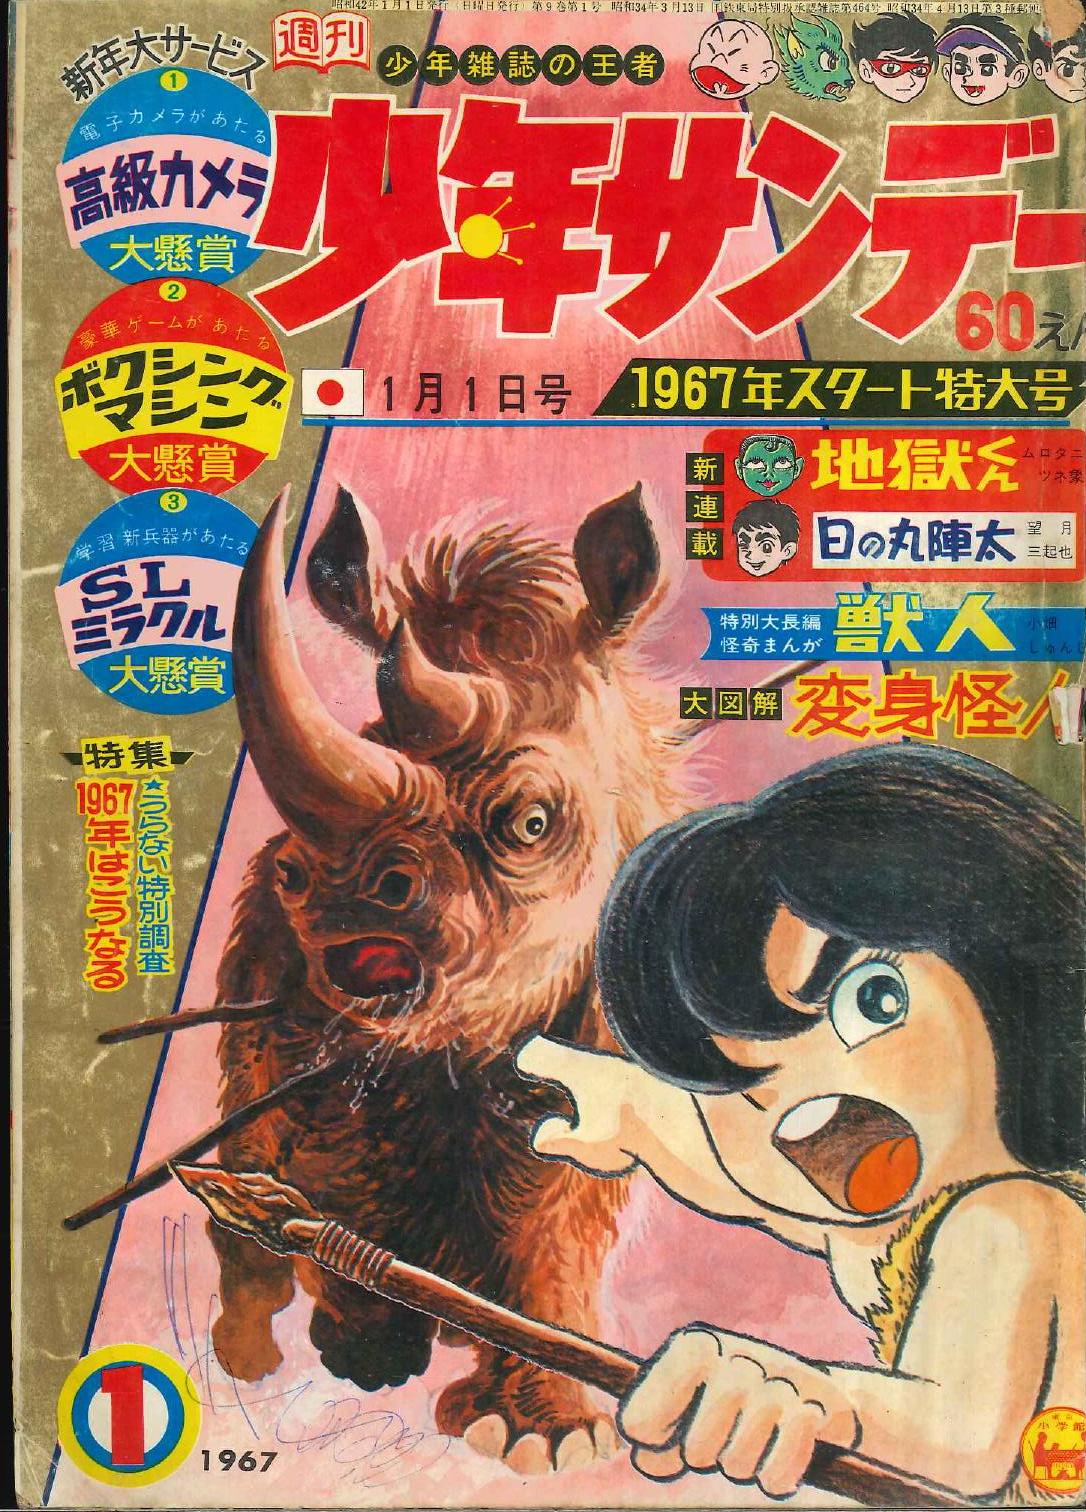 小学館 1967年 昭和42年 の漫画雑誌 週刊少年サンデー1967年 昭和42年 01 6701 まんだらけ Mandarake